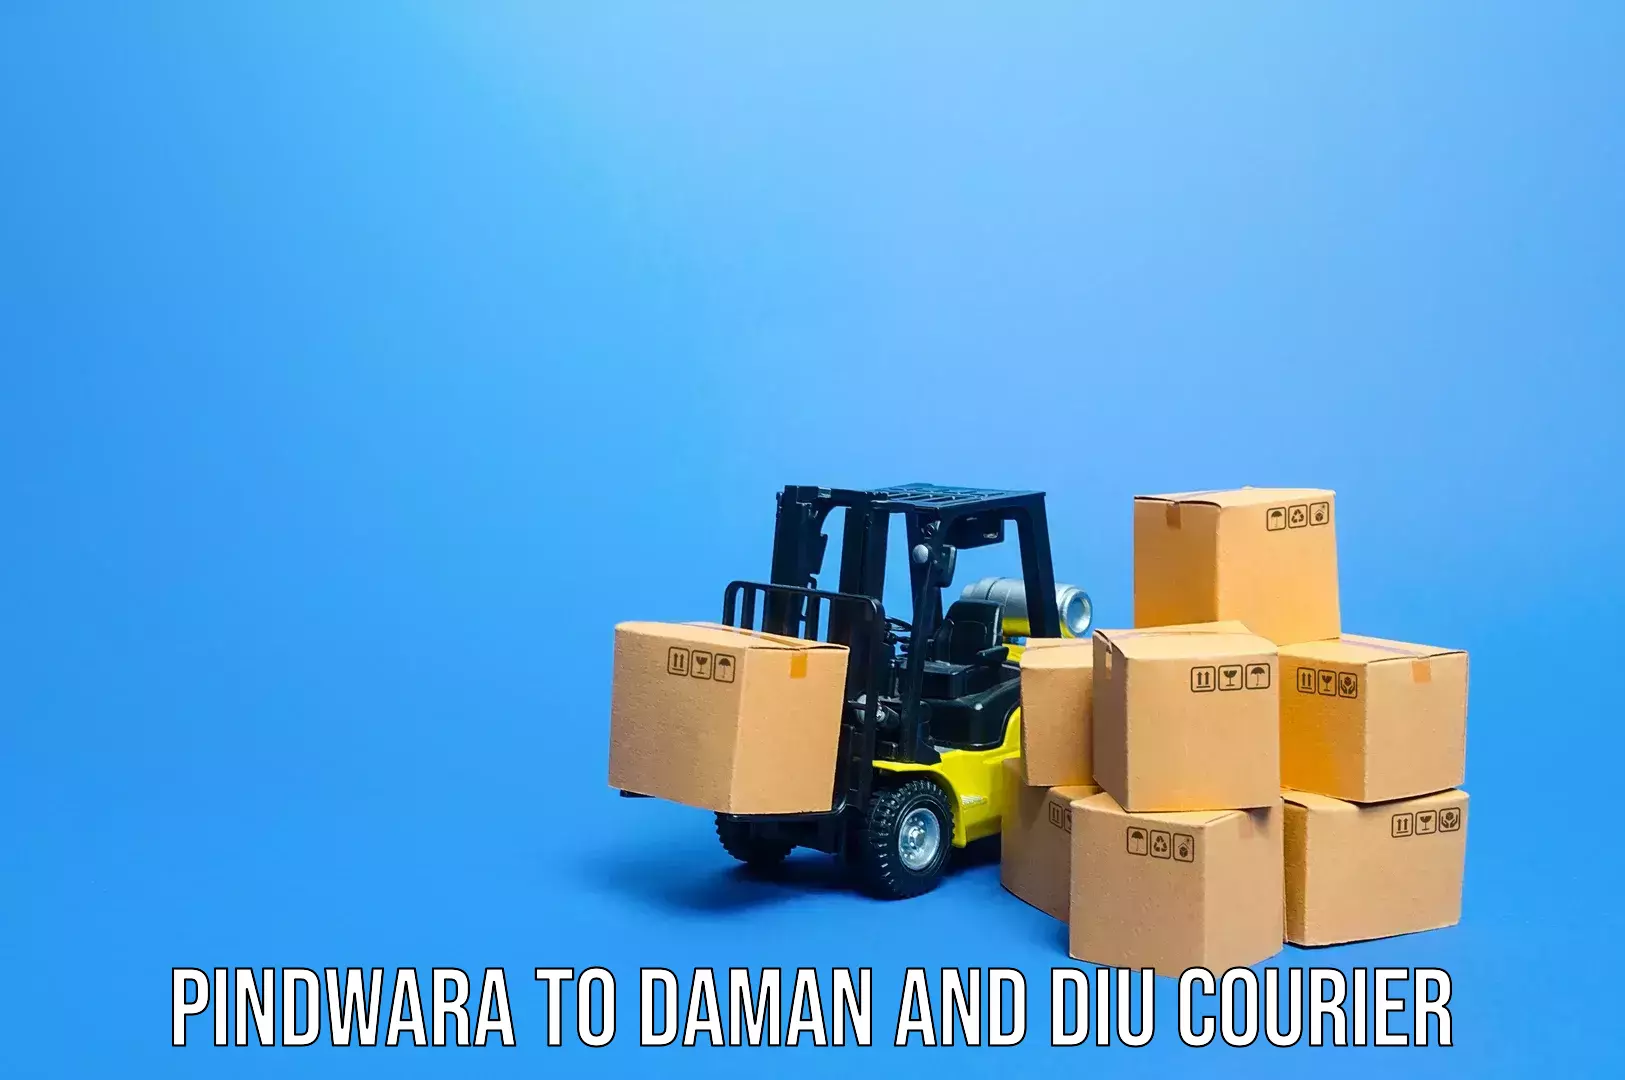 Baggage courier optimization Pindwara to Diu